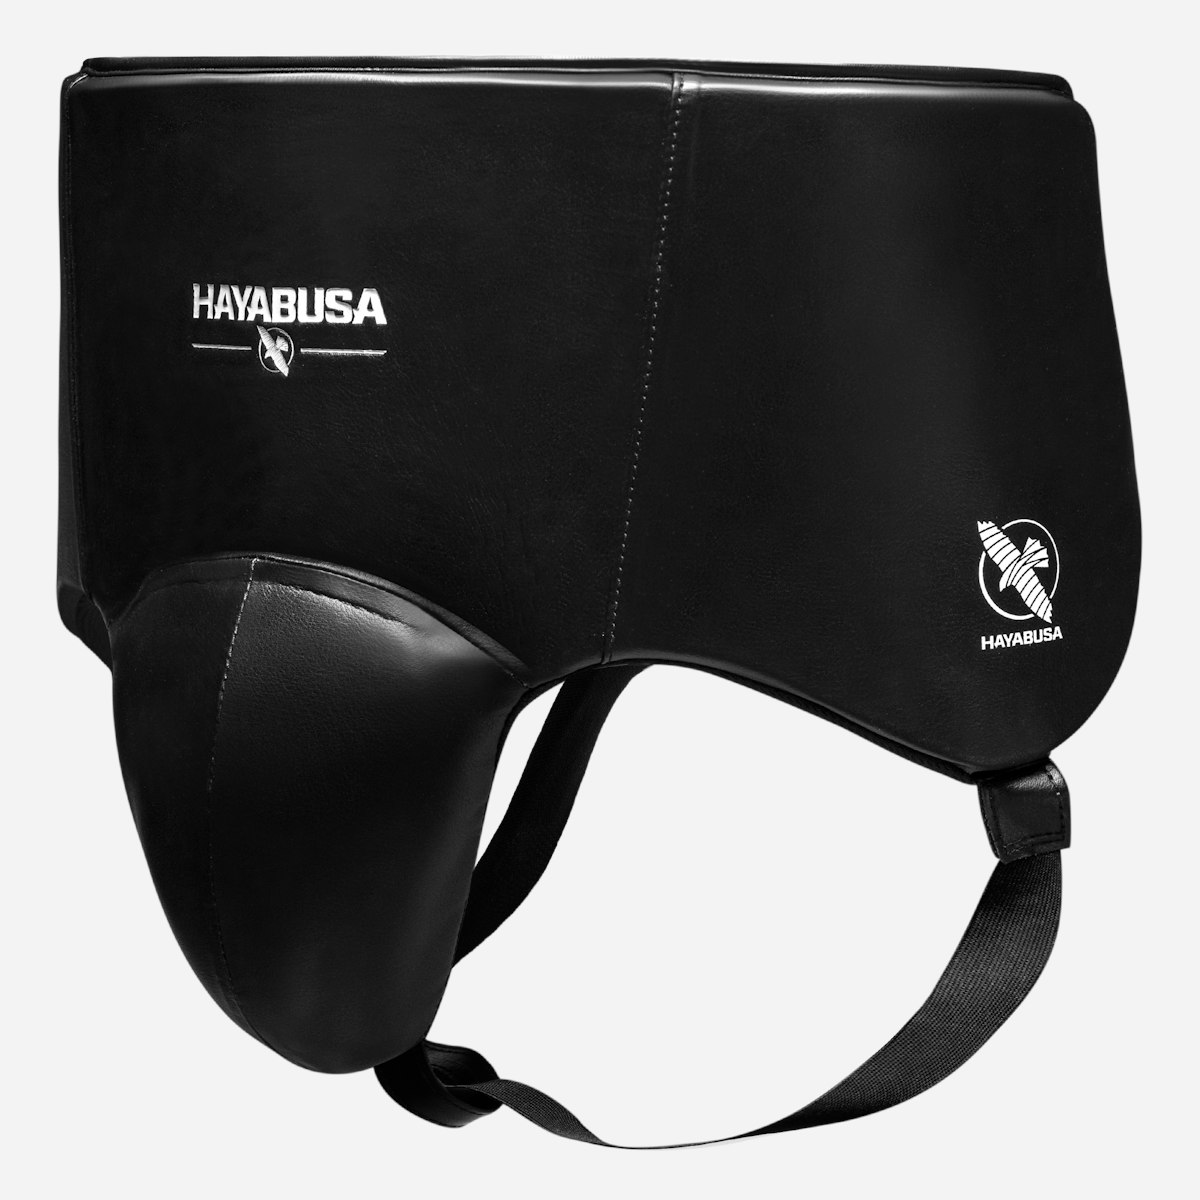 Hayabusa Pro Boxing Groin Protector • Hayabusa